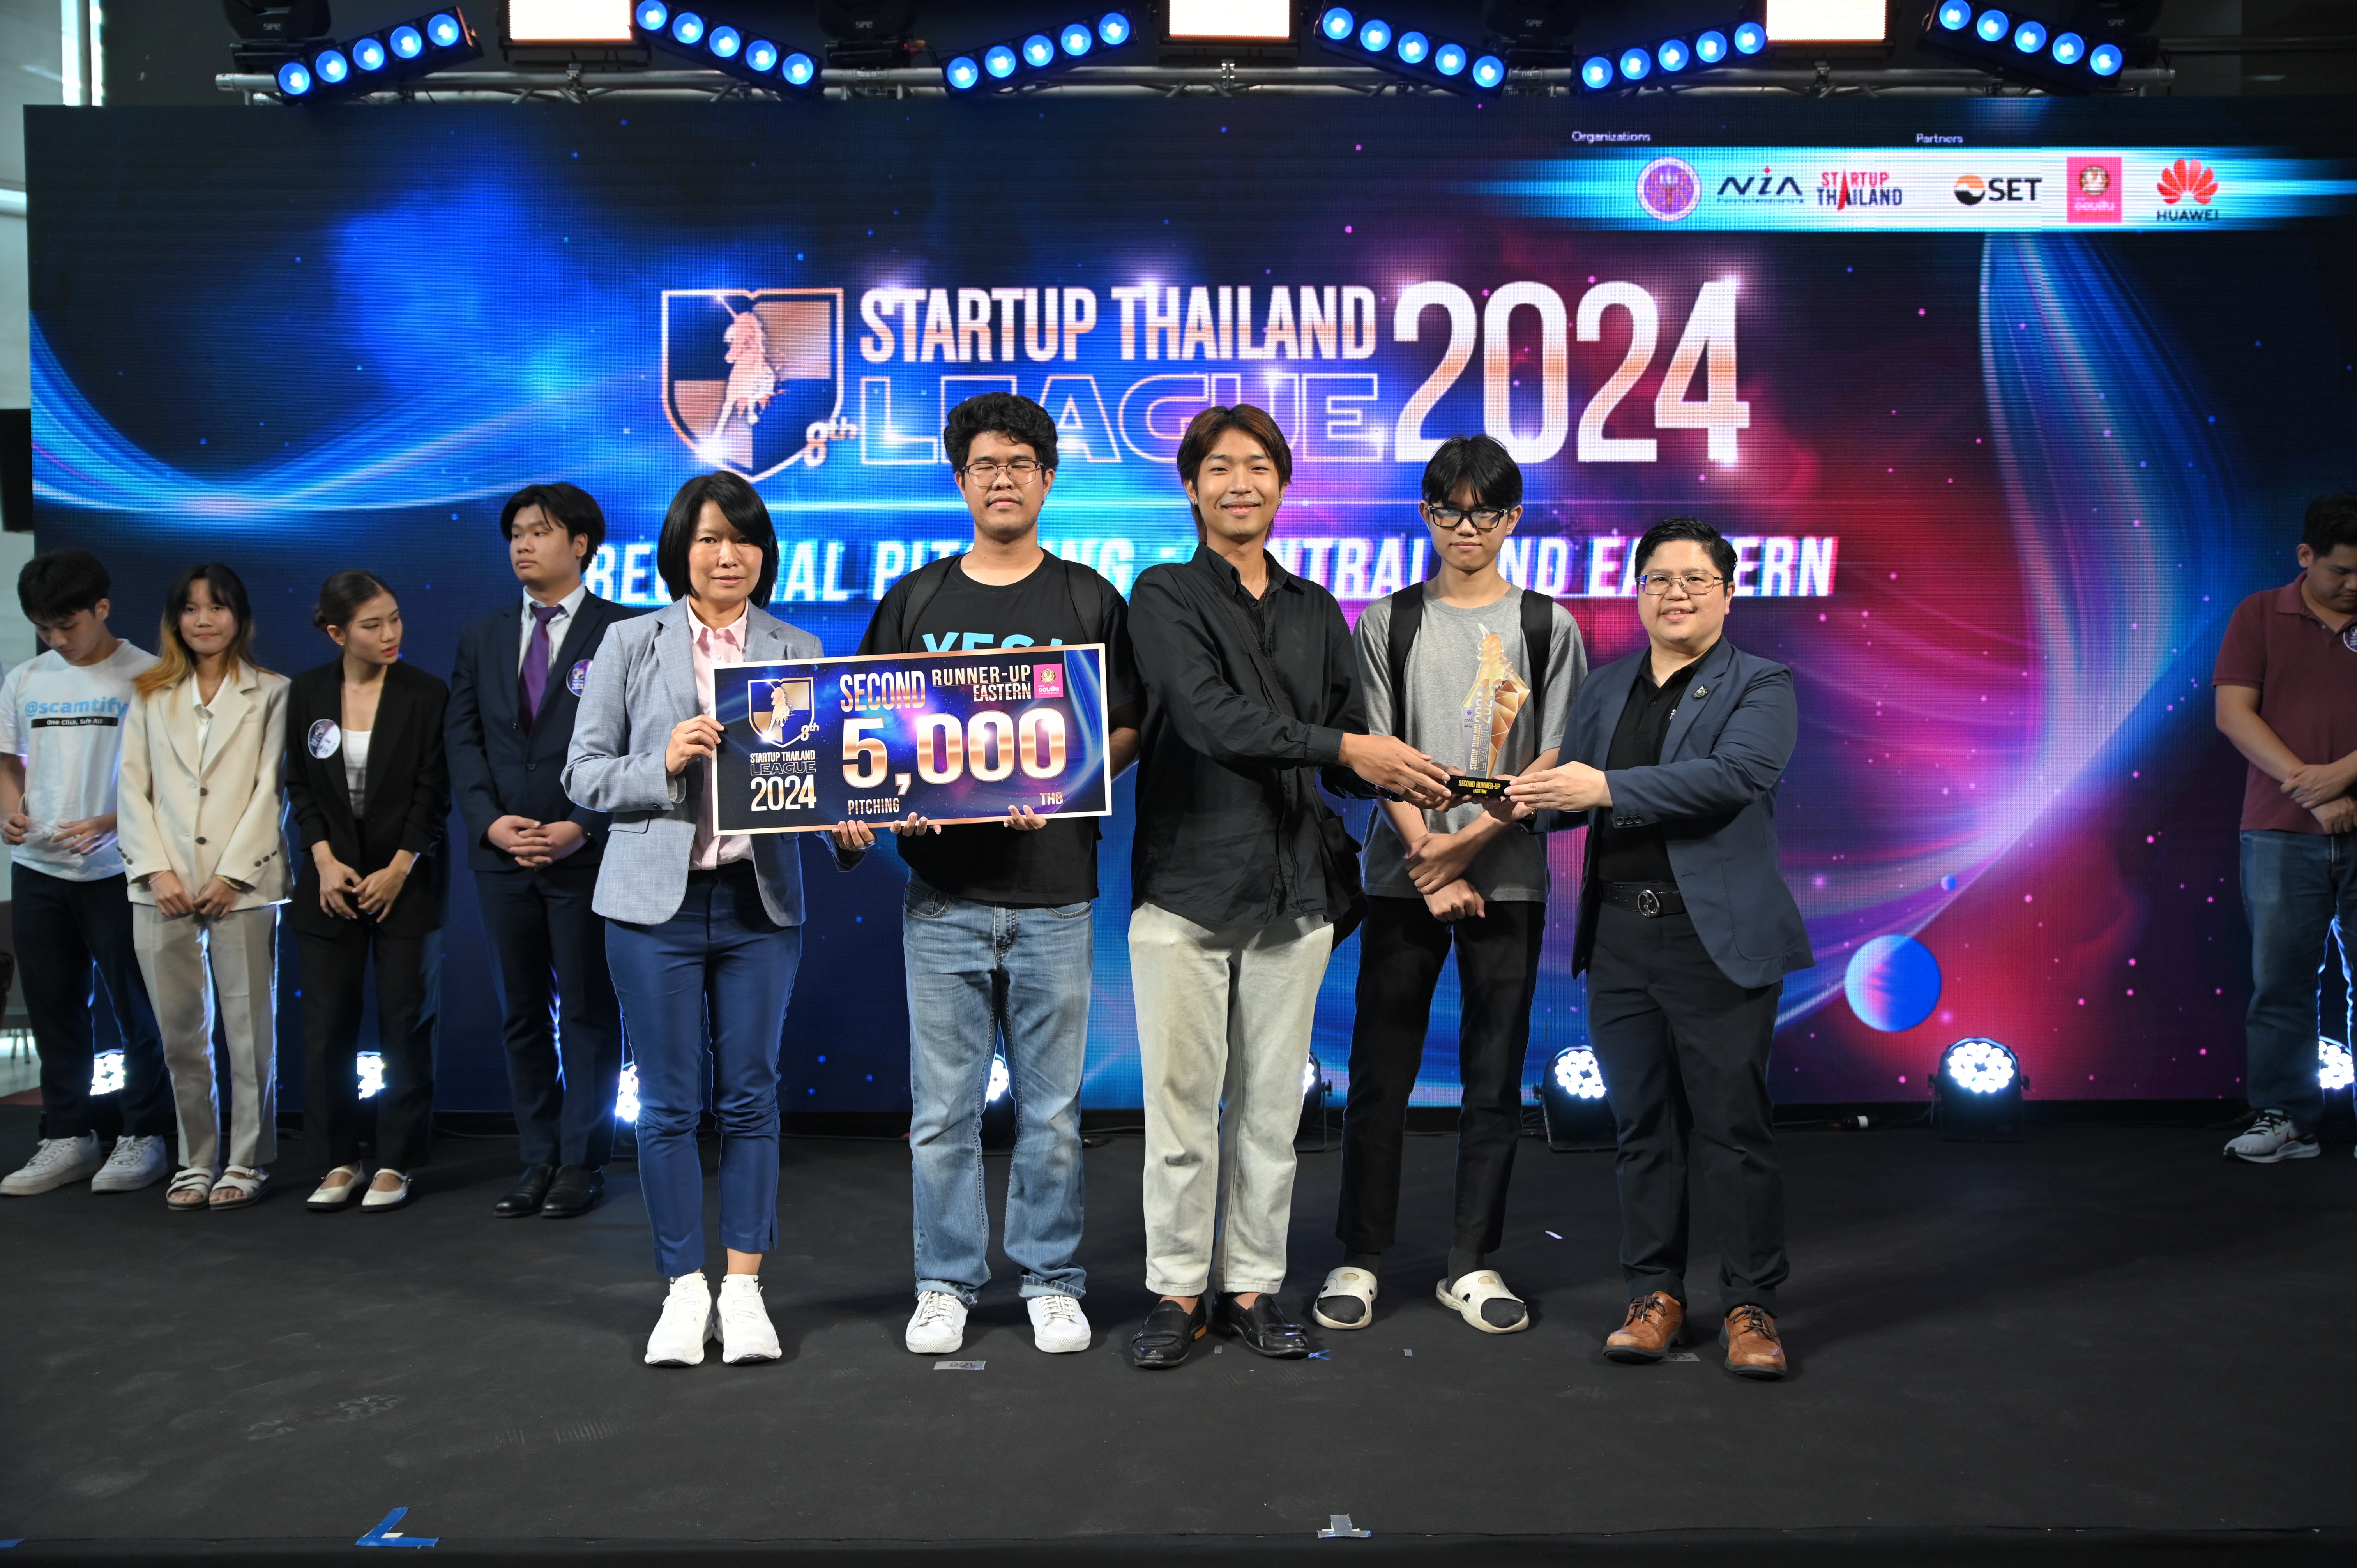 ทีม "เจนนี่ หว่อง" จาก ม.บูรพา คว้ารางวัลชนะเลิศ  STARTUP THAILAND LEAGUE 2024 